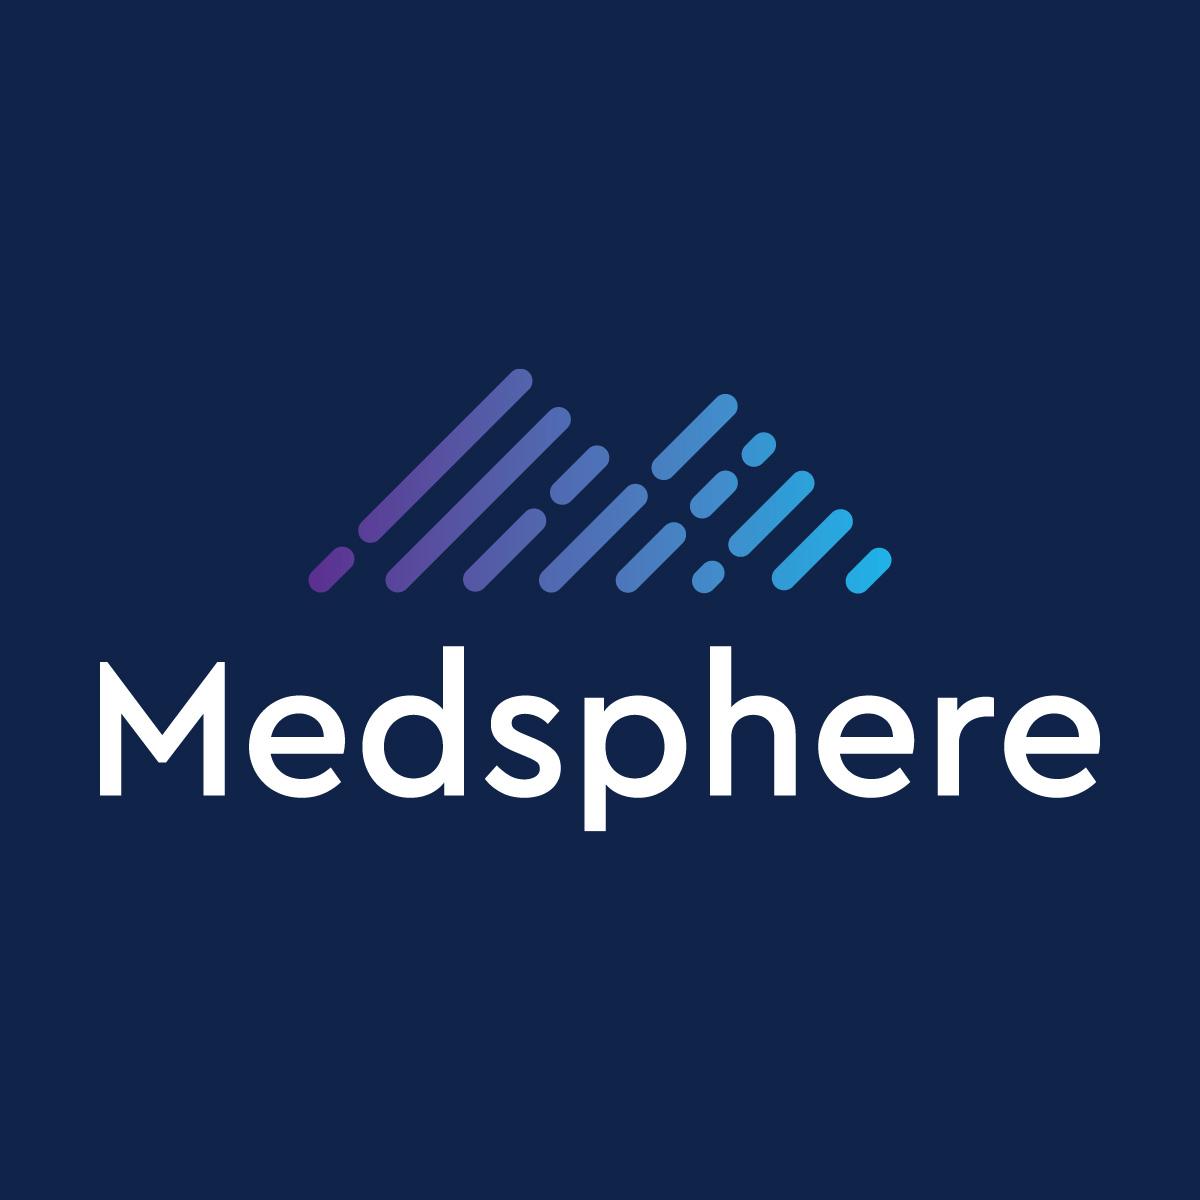 Medsphere-Meta logo